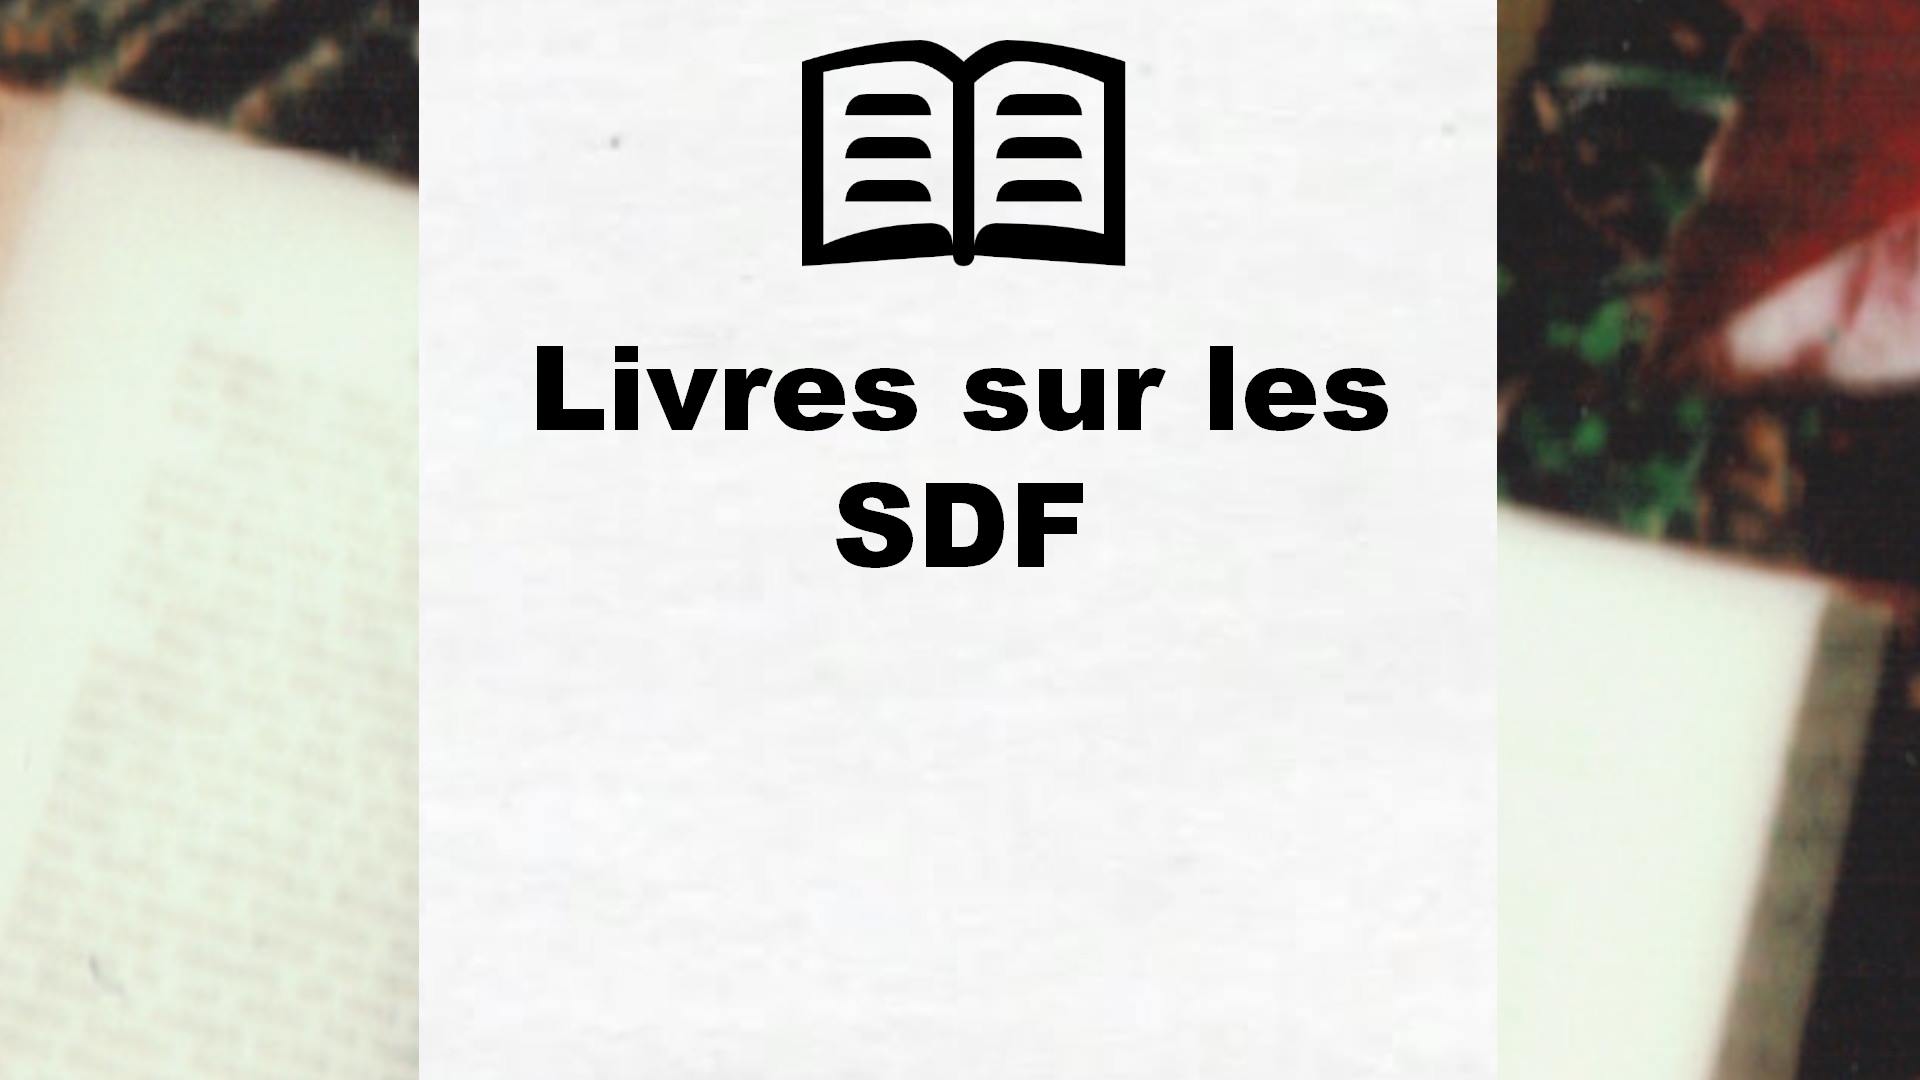 Livres sur les SDF